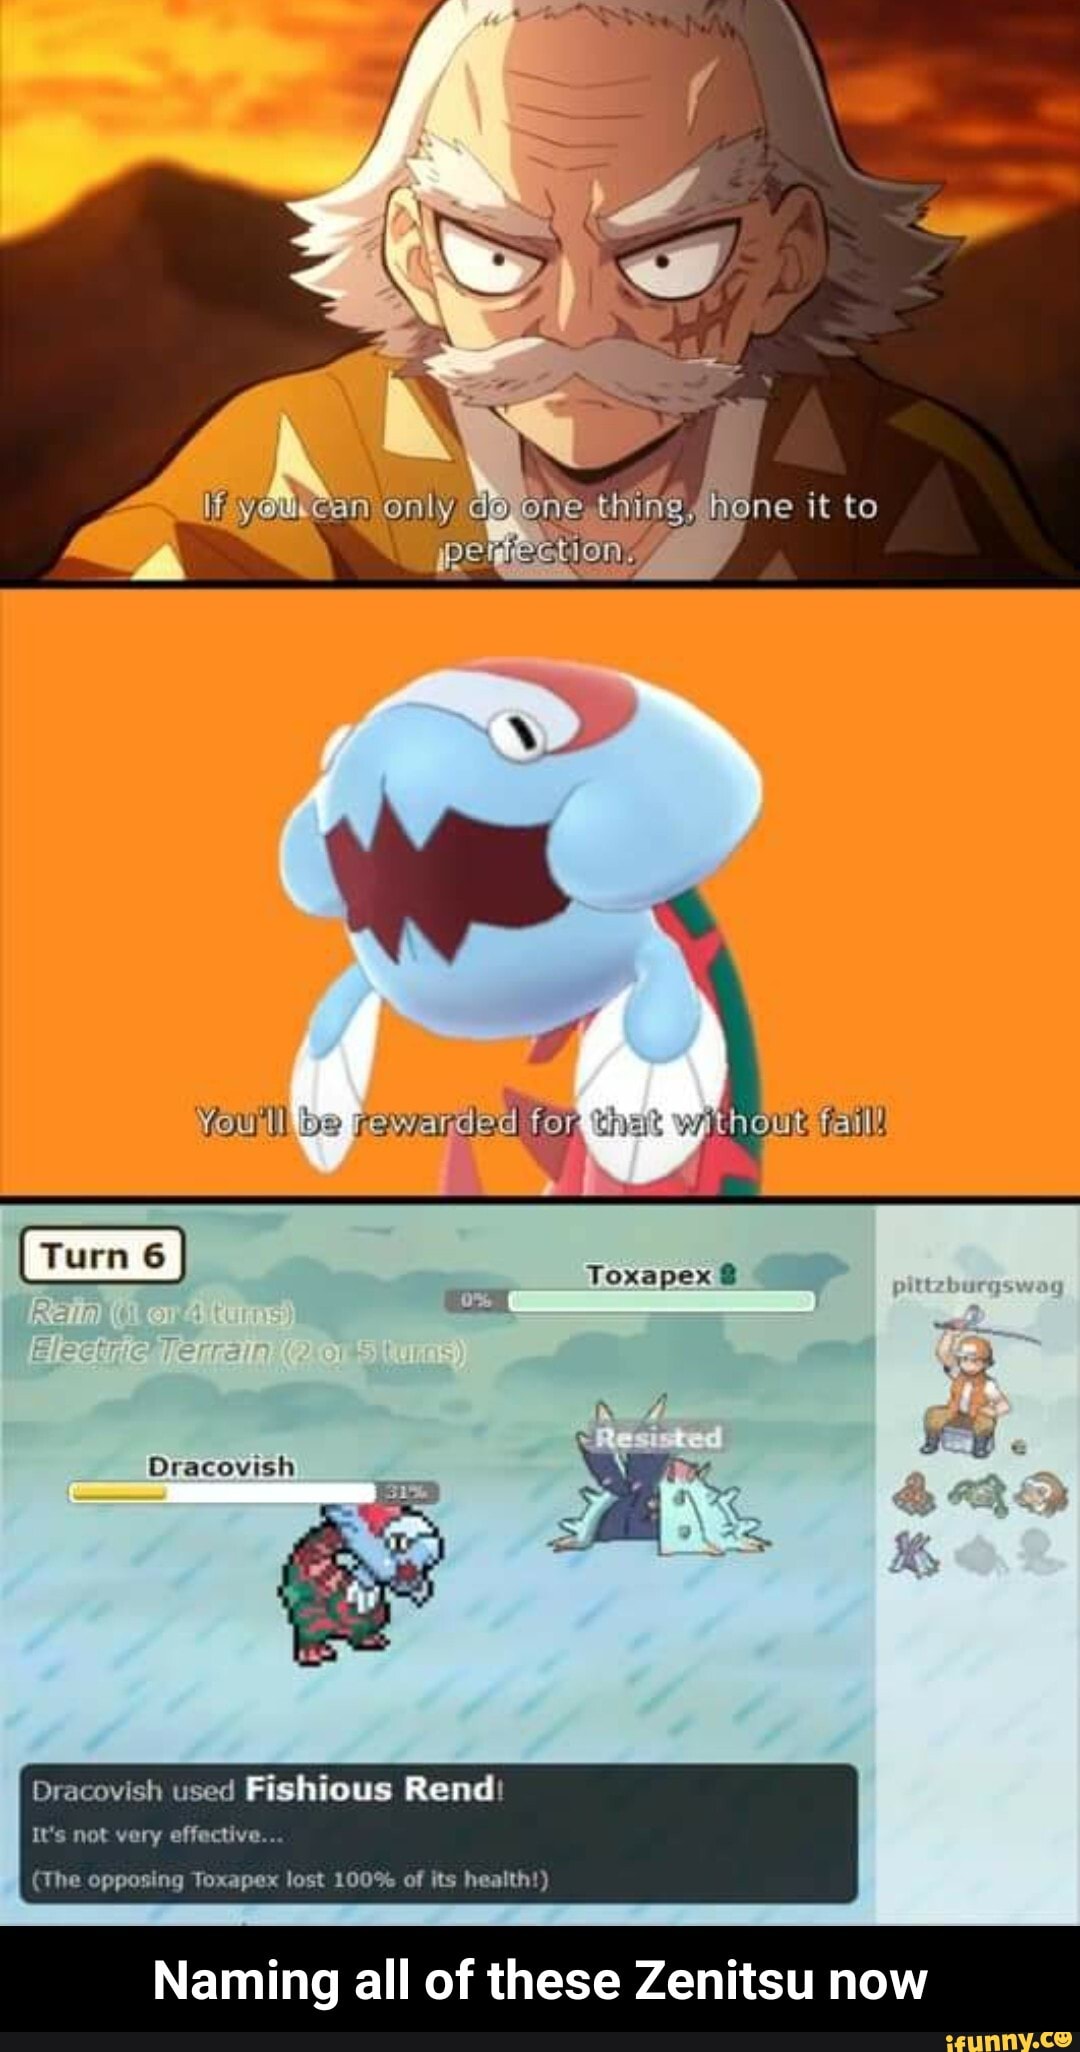 Pokémemes - oddish - Pokemon Memes - Pokémon, Pokémon GO - Cheezburger